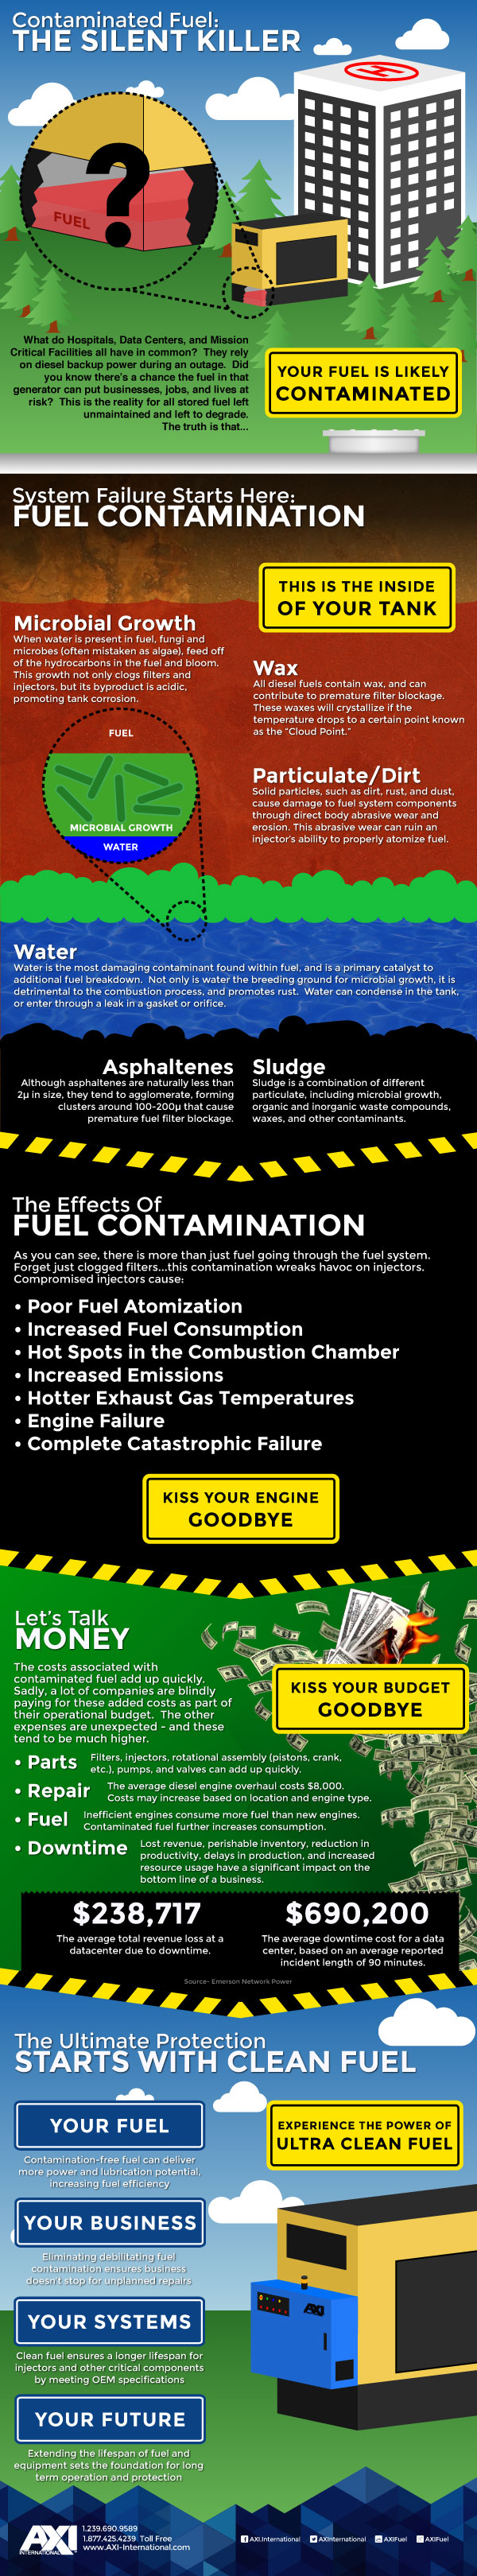 elimina-contaminarea-rezervoarelor-diesel